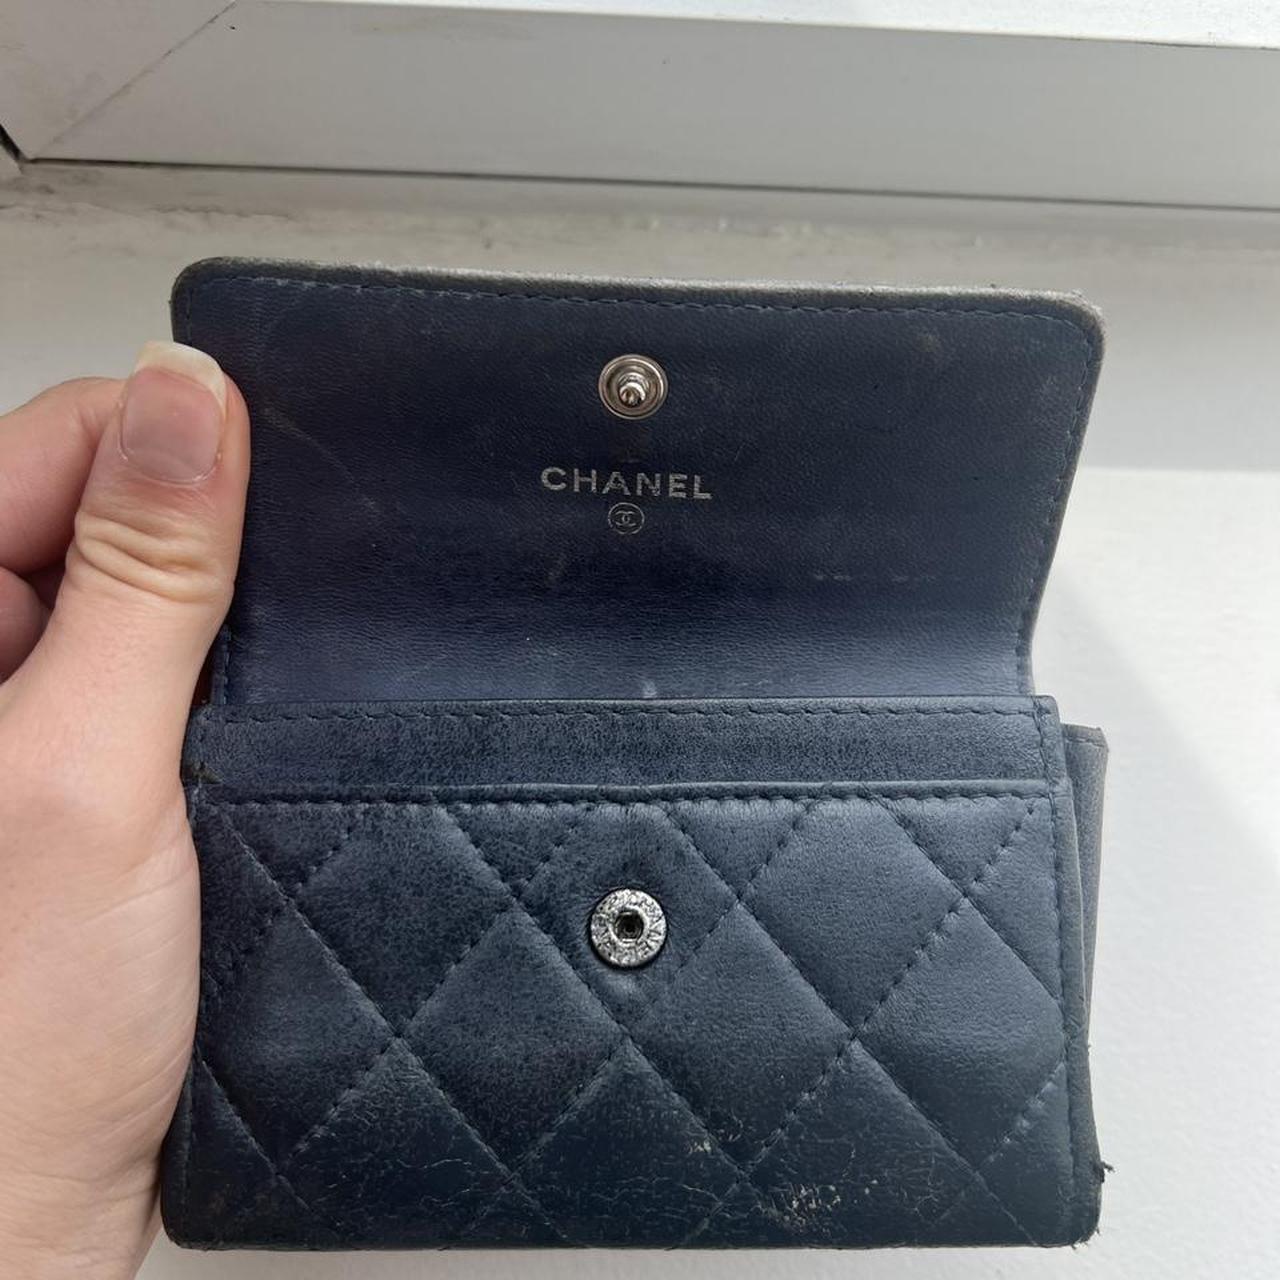 Chanel Women's Wallets - Blue